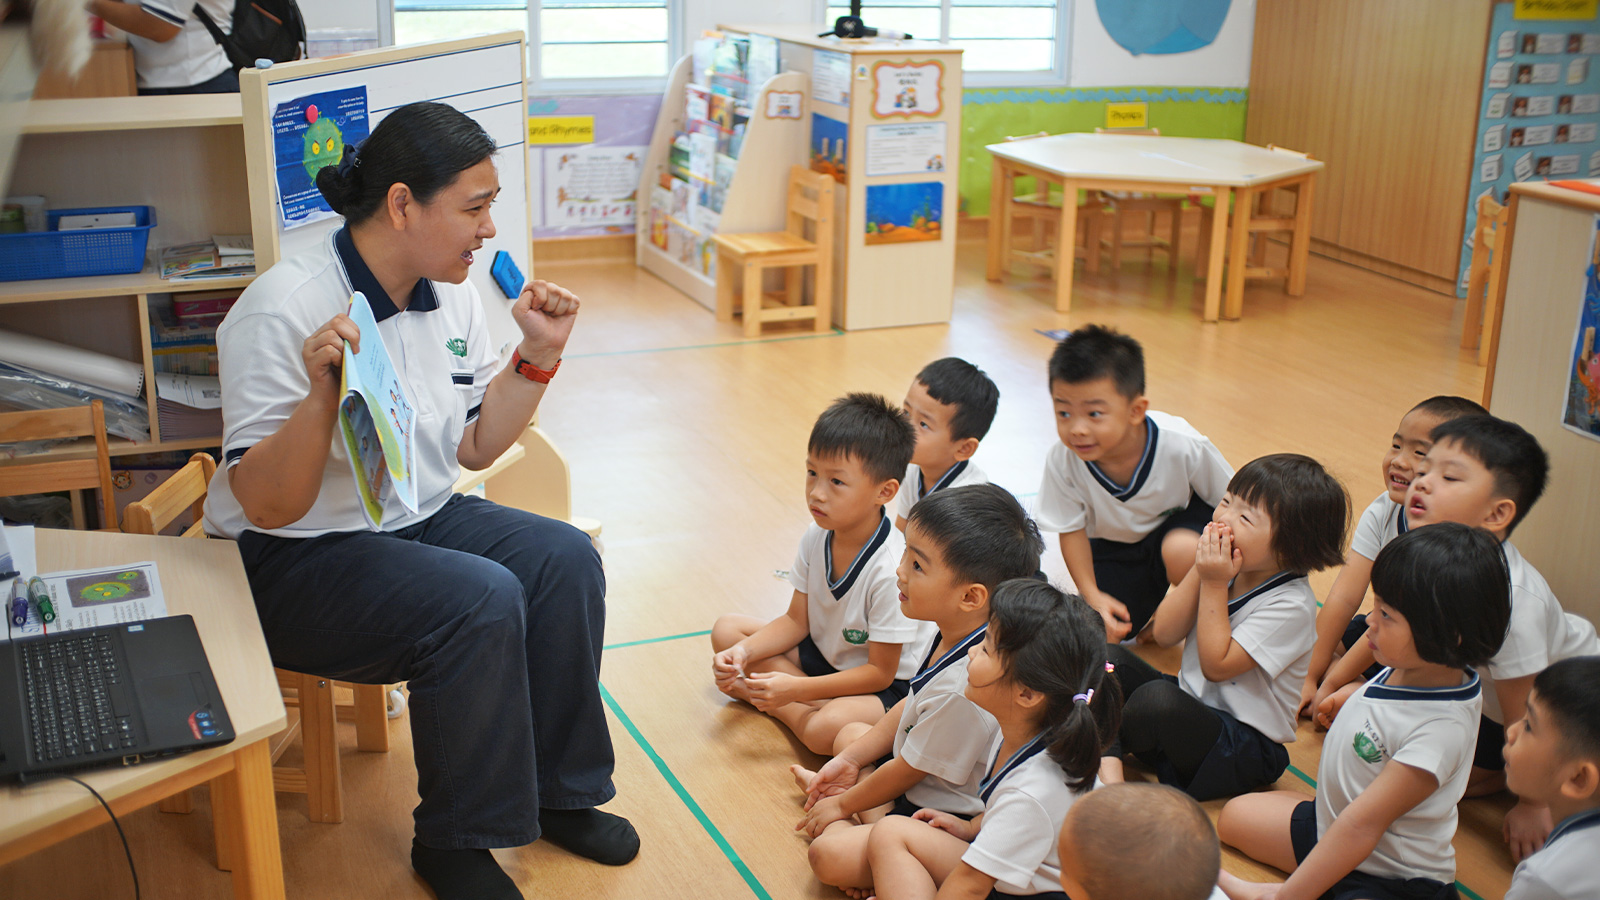 大爱幼教中心的老师以绘本和活泼的方式提高小朋友的防疫知识。